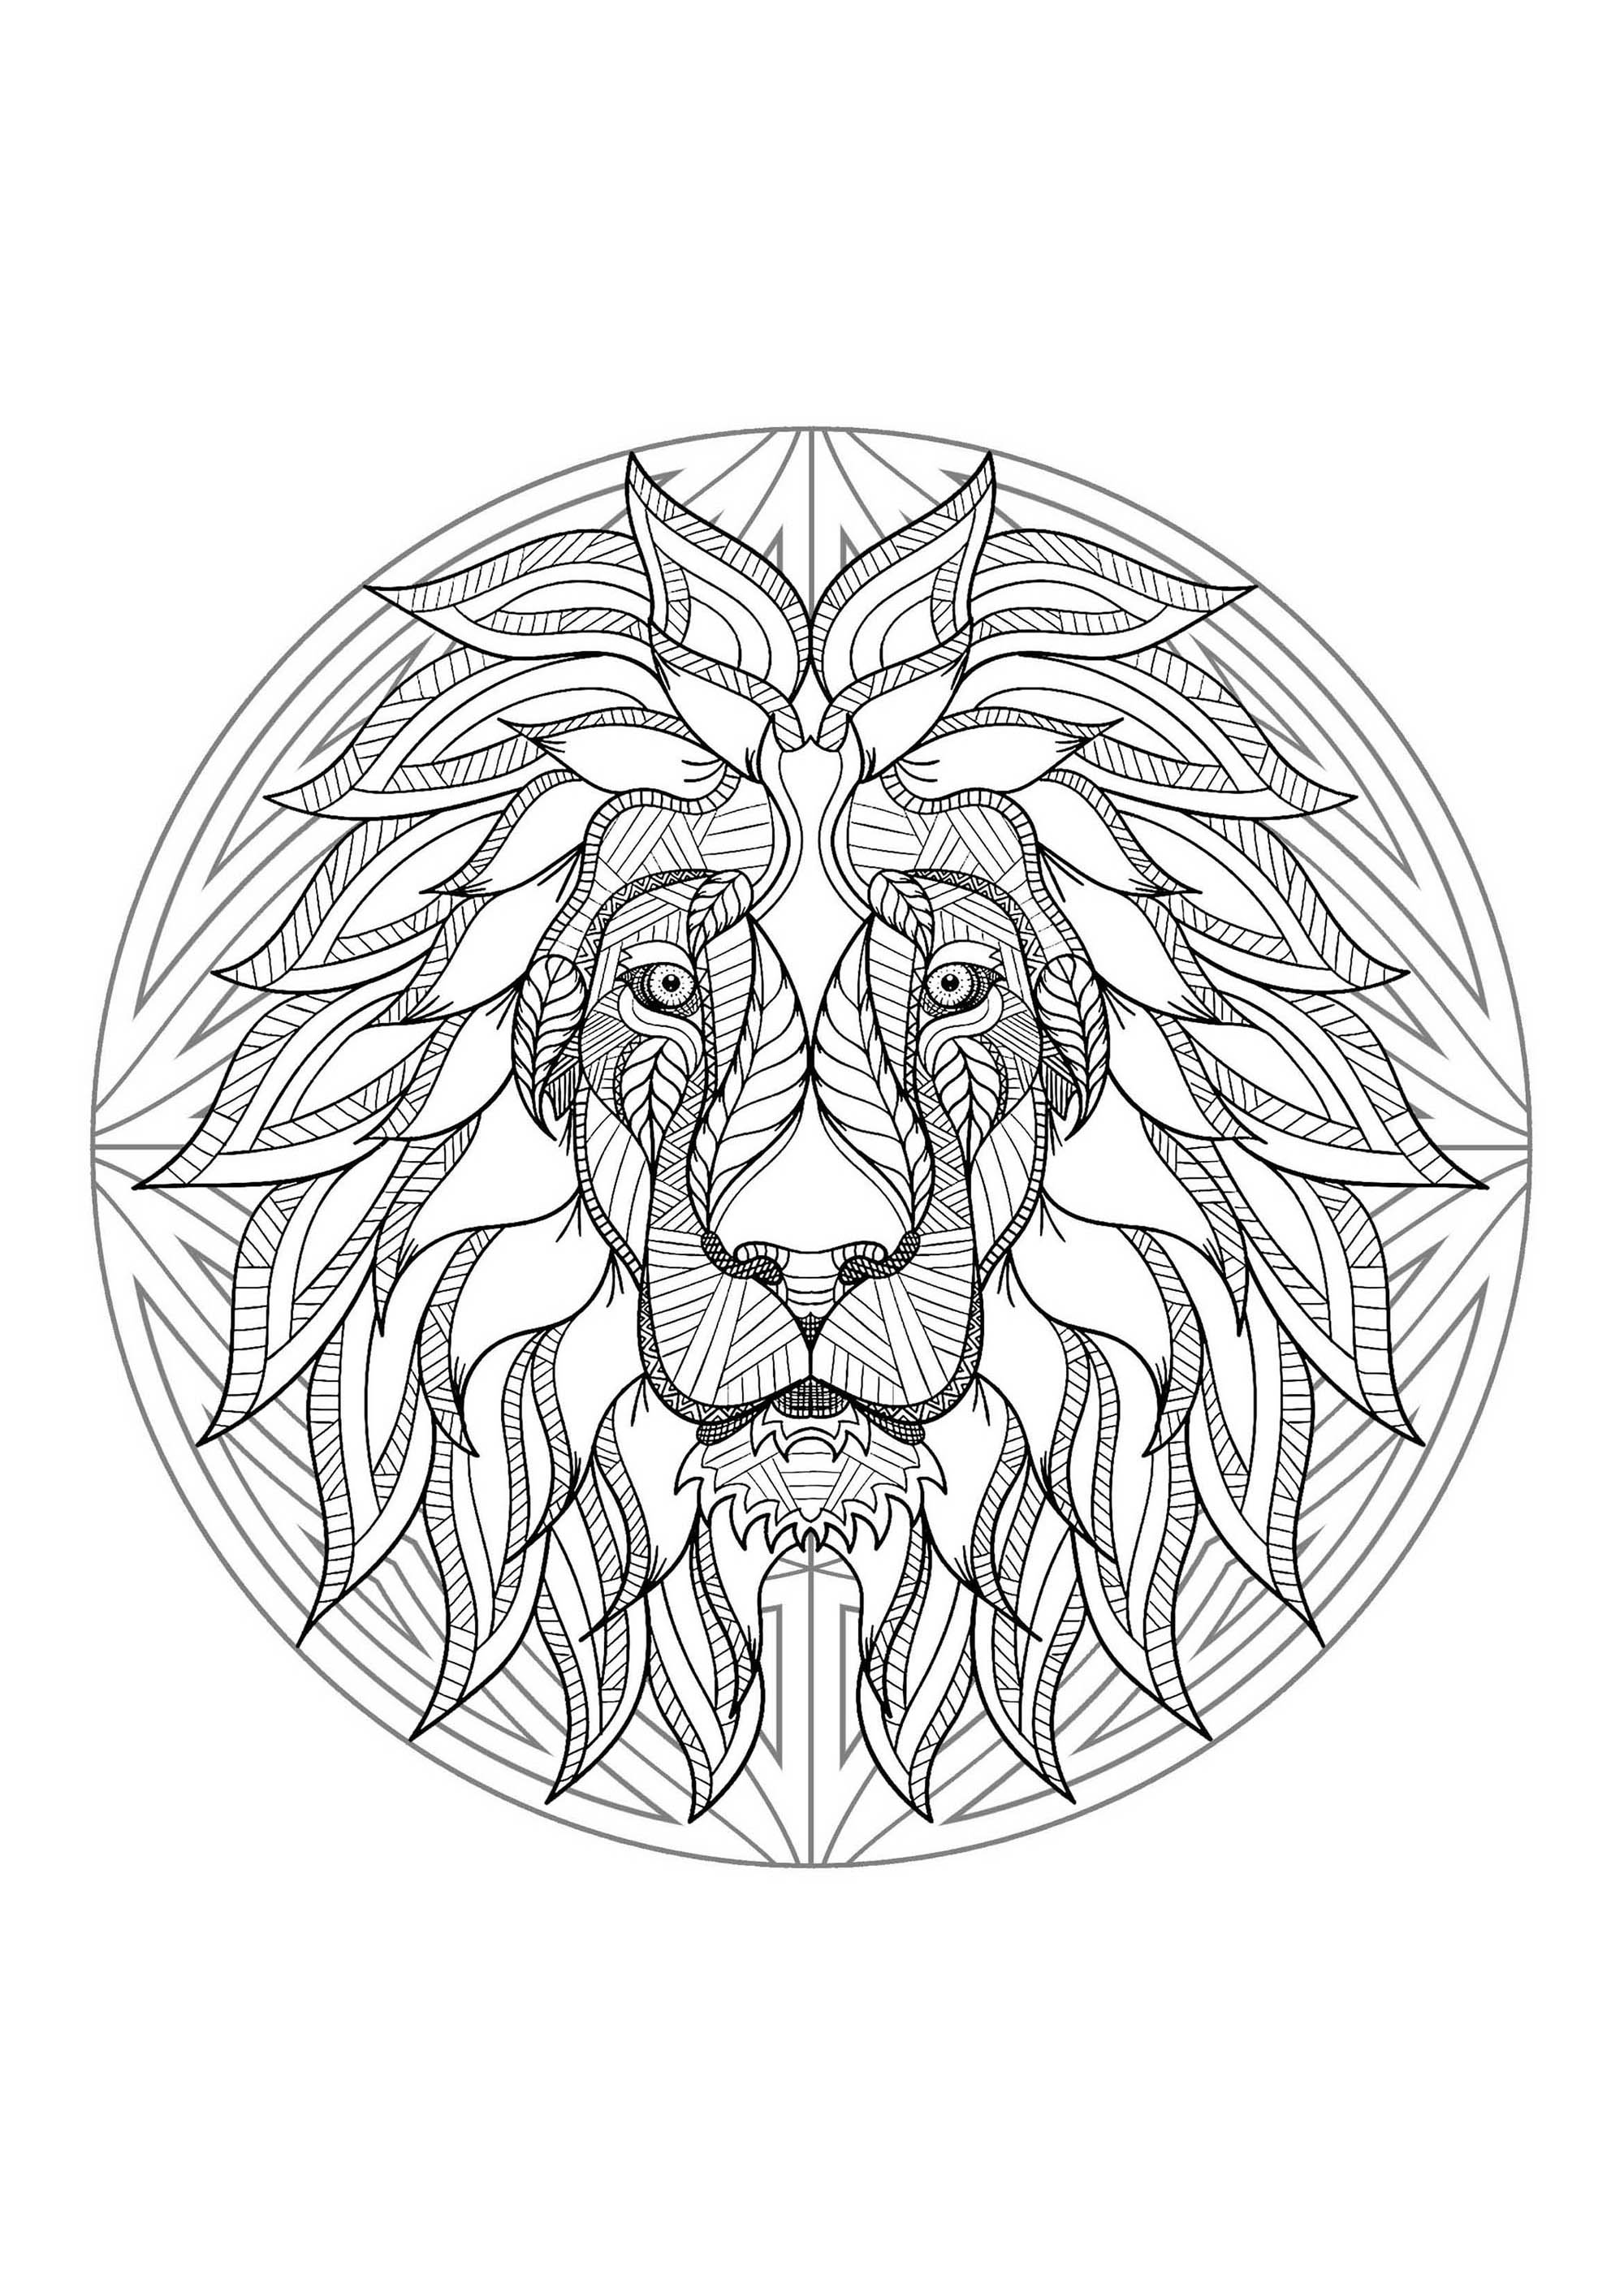 Una cabeza de león en un mandala. ¡Una auténtica obra maestra! Este colorido representa una cabeza de león perfectamente integrada en un mandala complejo y rico.